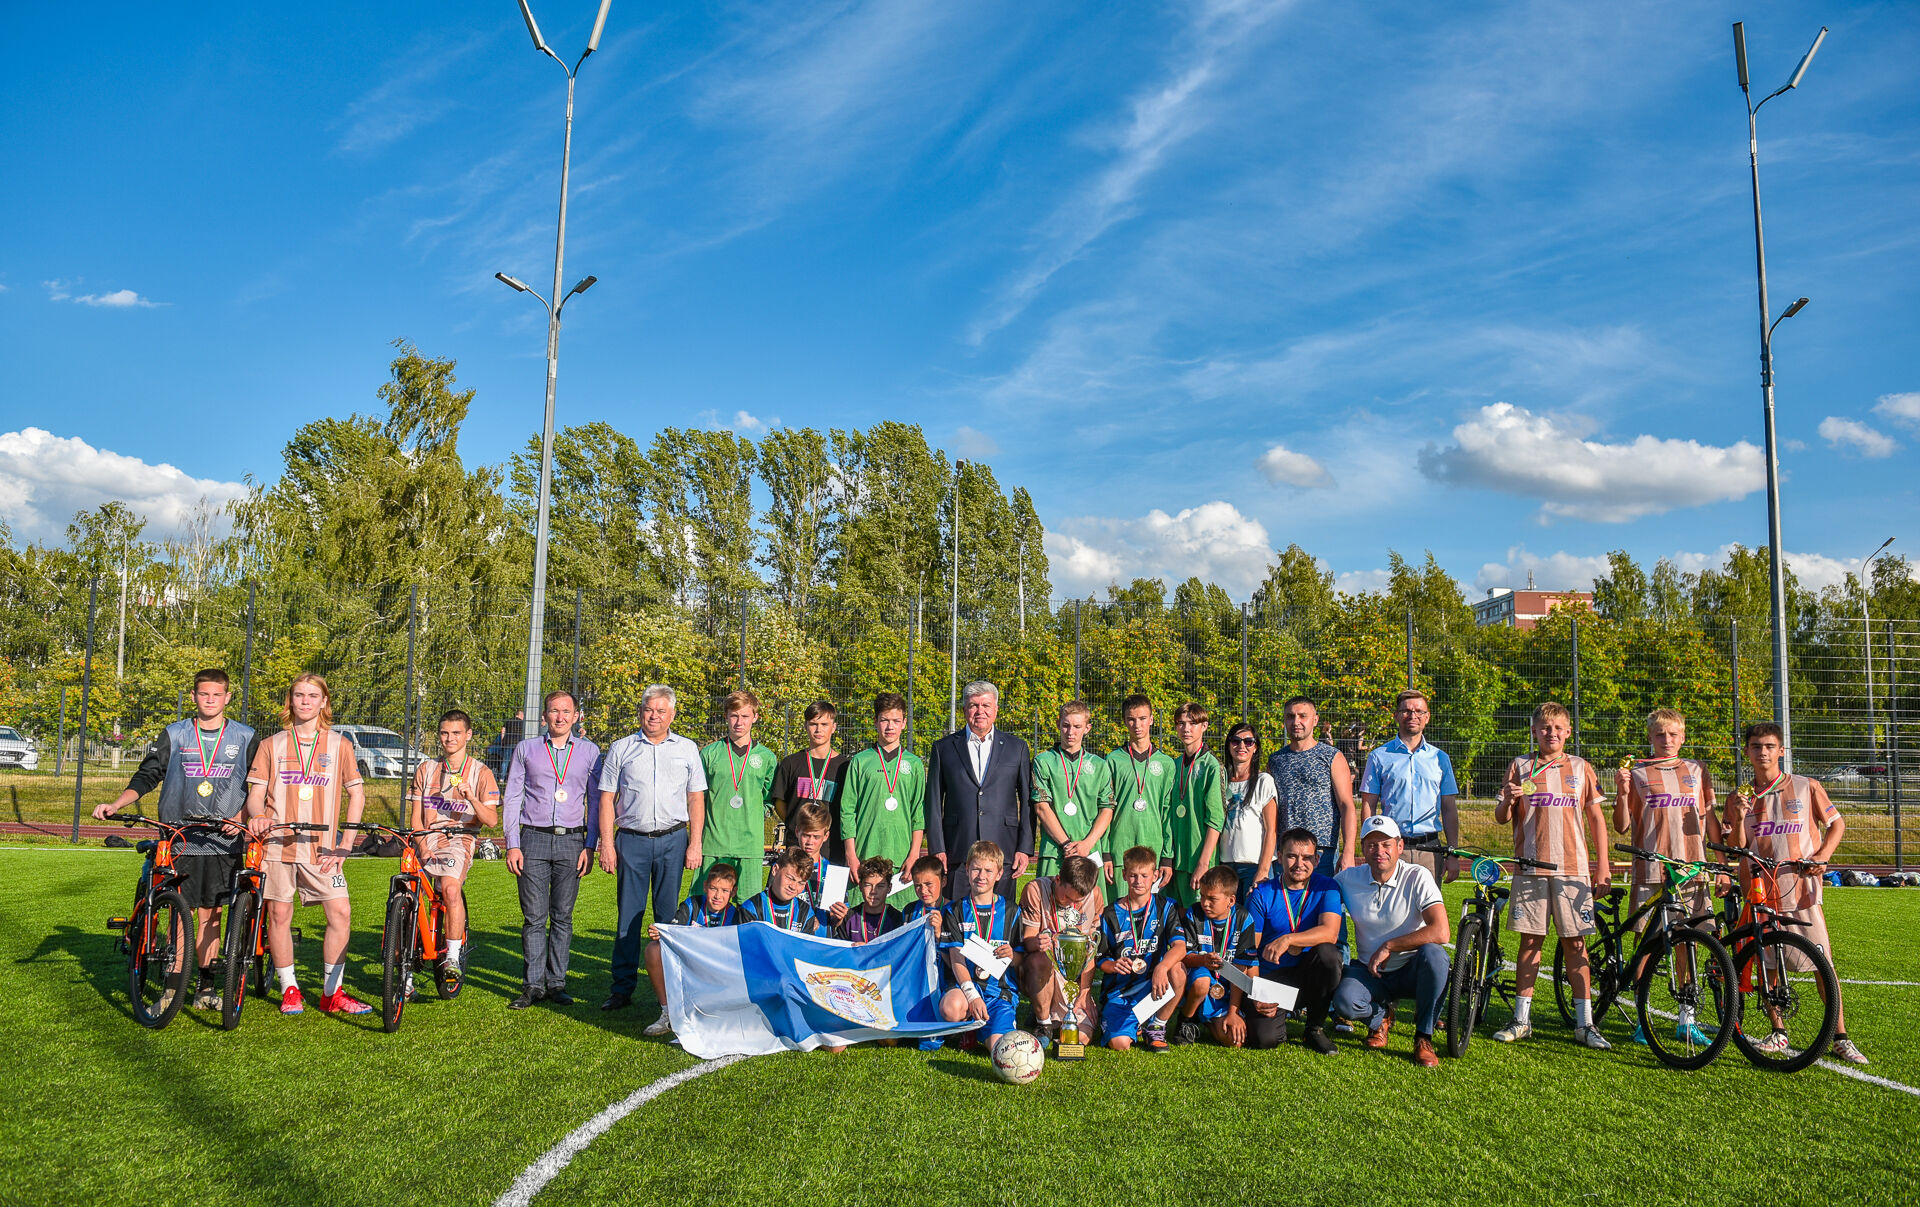 Мэр города Наиль Магдеев наградил победителей городского турнира по дворовому футболу